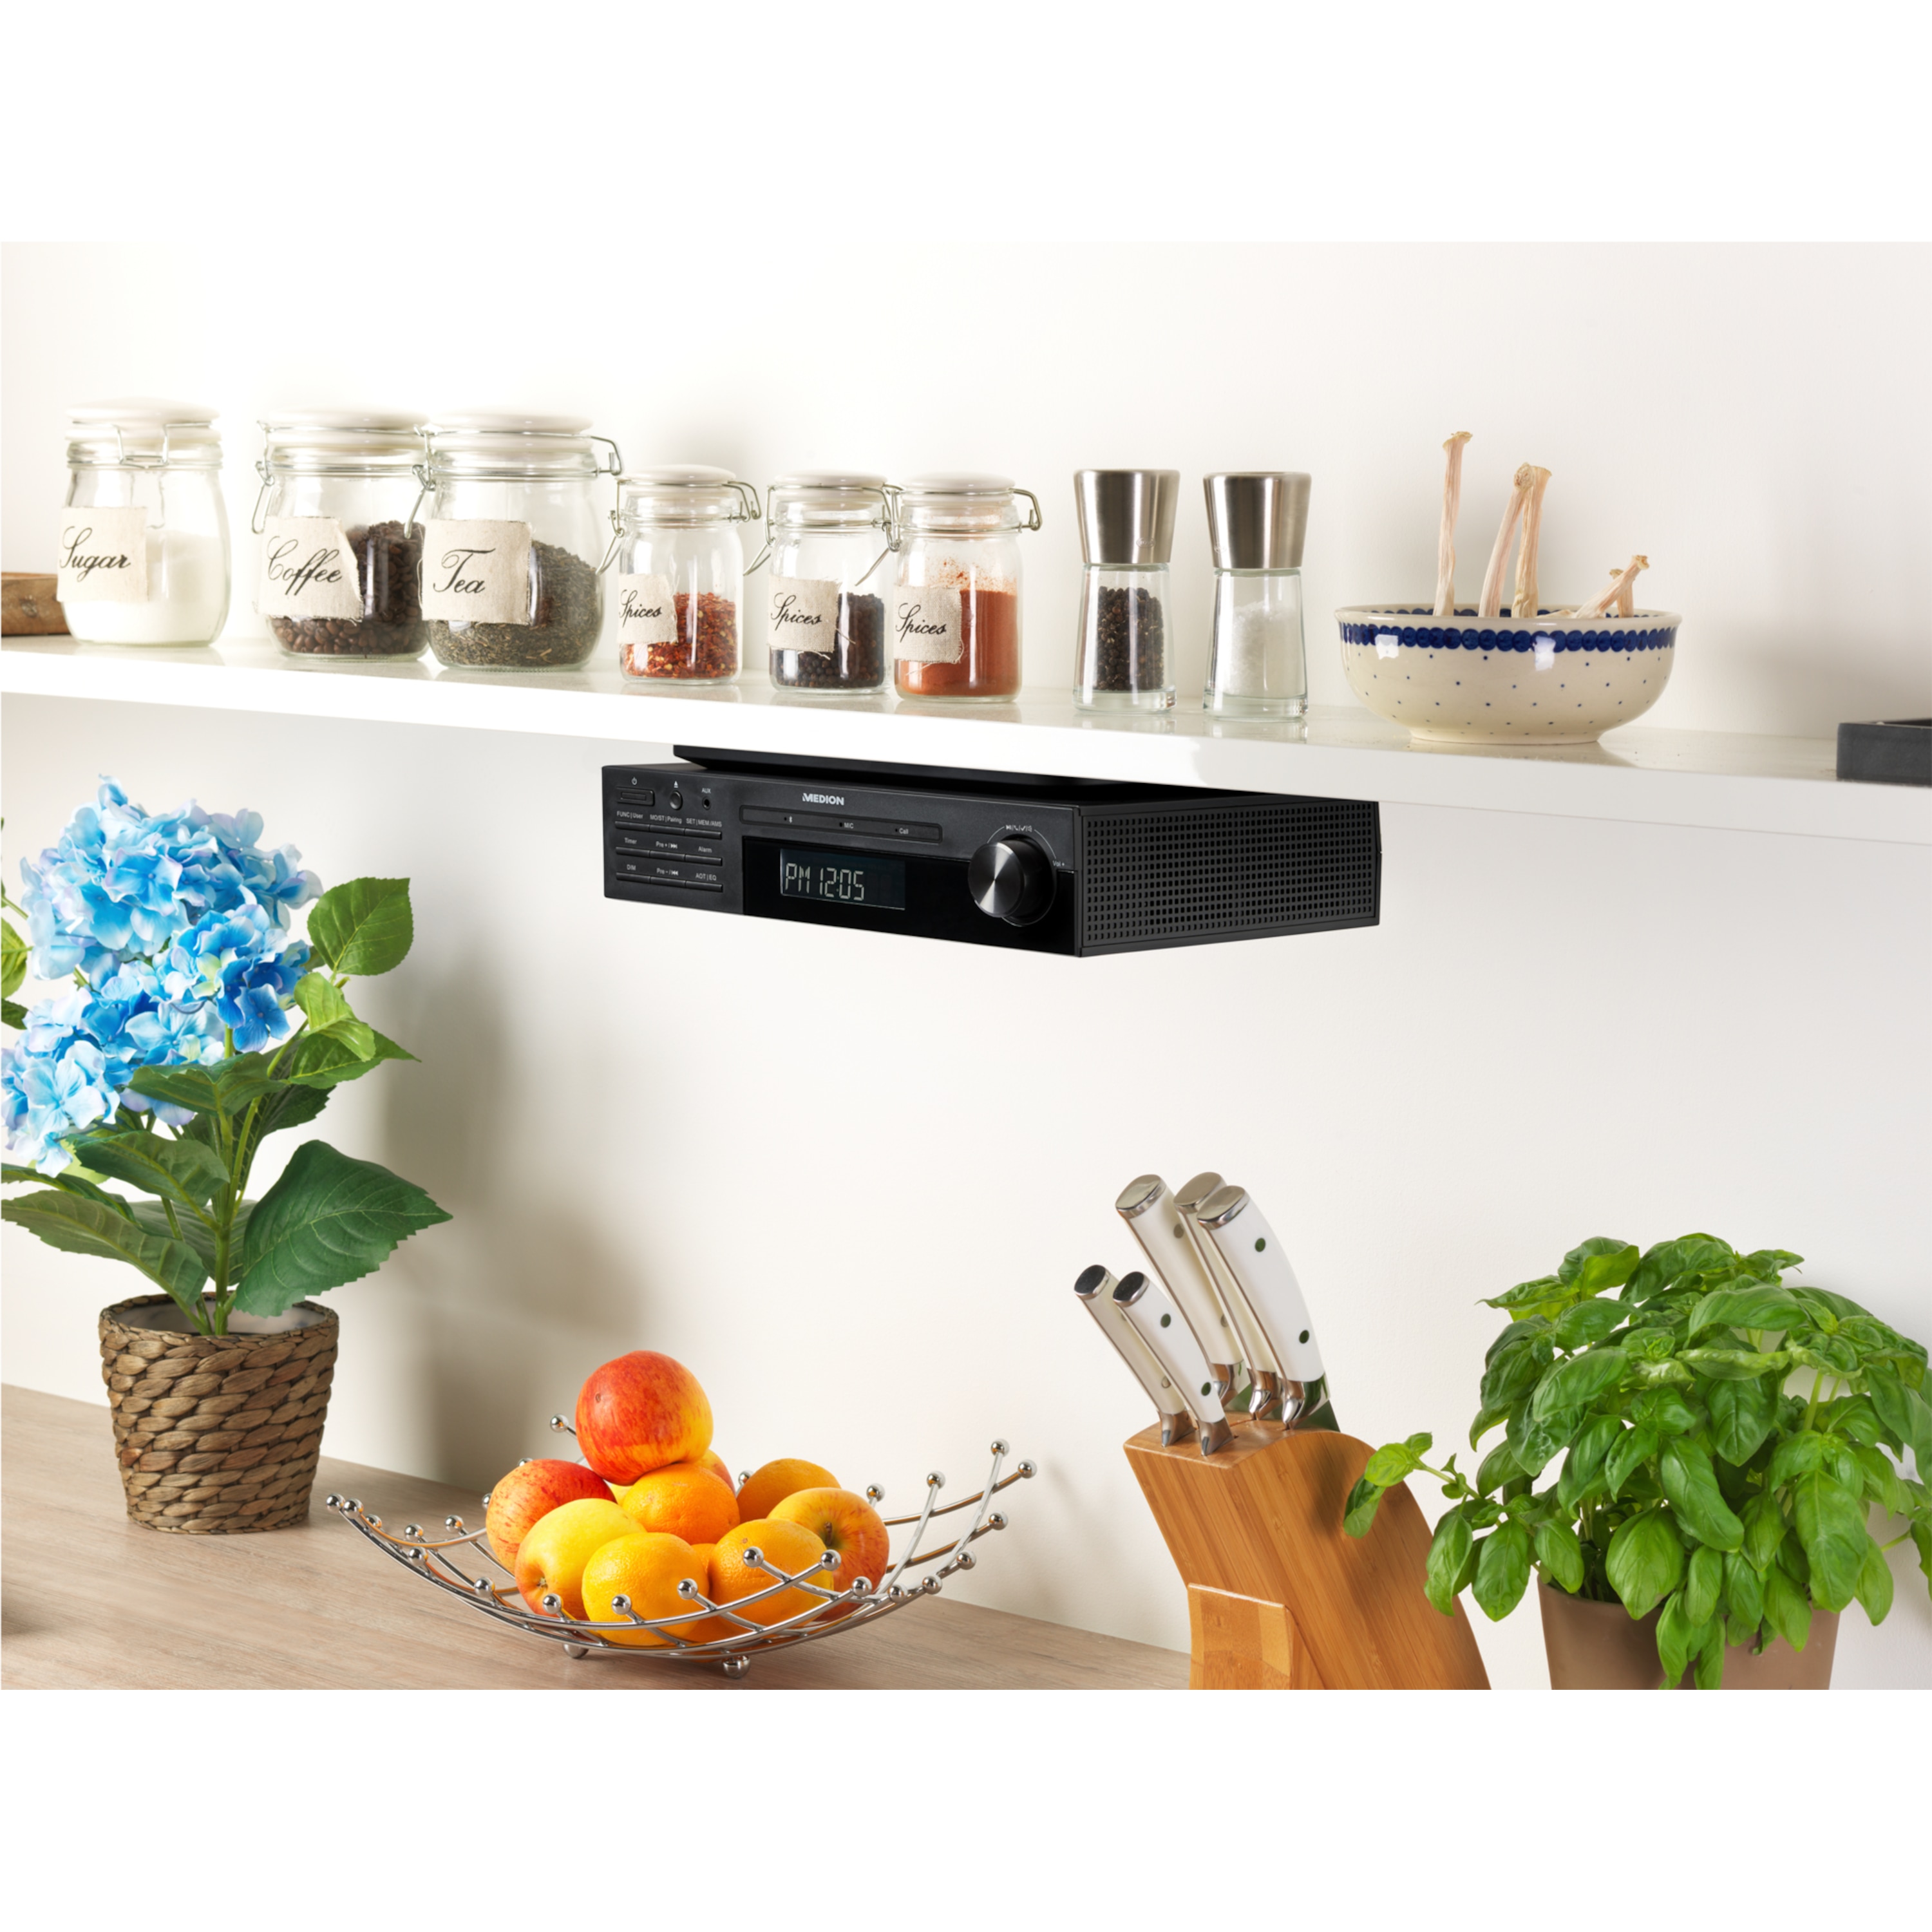 MEDION® LIFE® E66567 Stereo Unterbauradio mit Bluetooth® 5.0, perfekt für die Küche, Alarm-Funktion und Koch-Timer, AUX